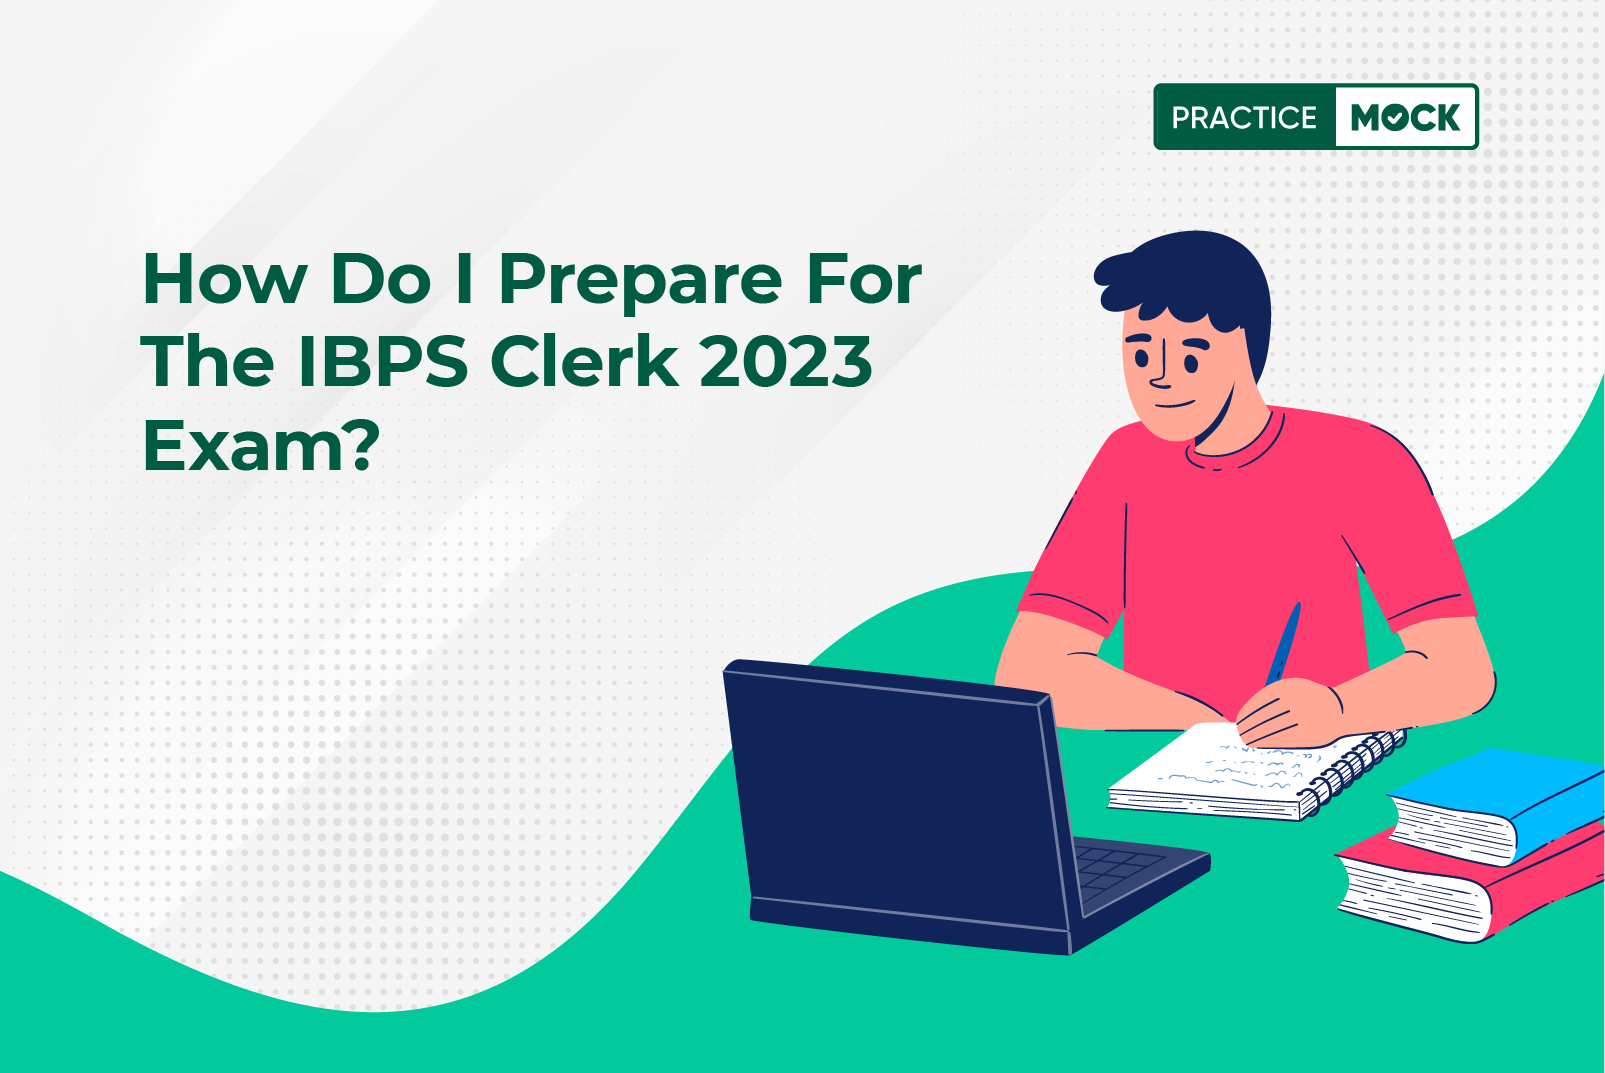 How do I Prepare for the IBPS Clerk 2023 Exam?